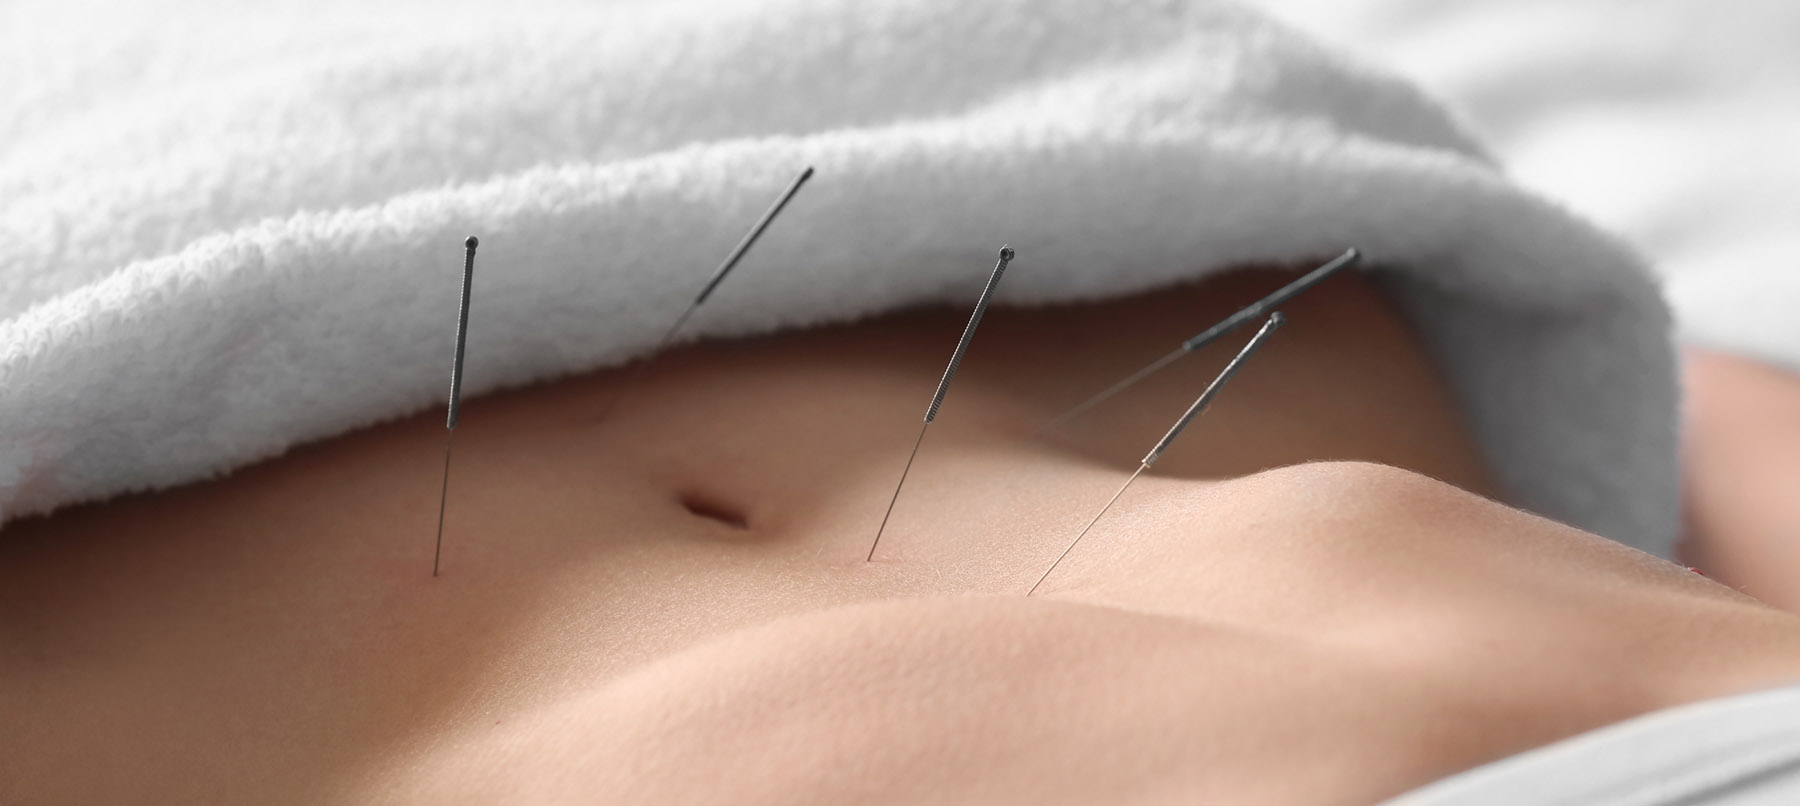 acupuncture for fertility ile ilgili gÃ¶rsel sonucu